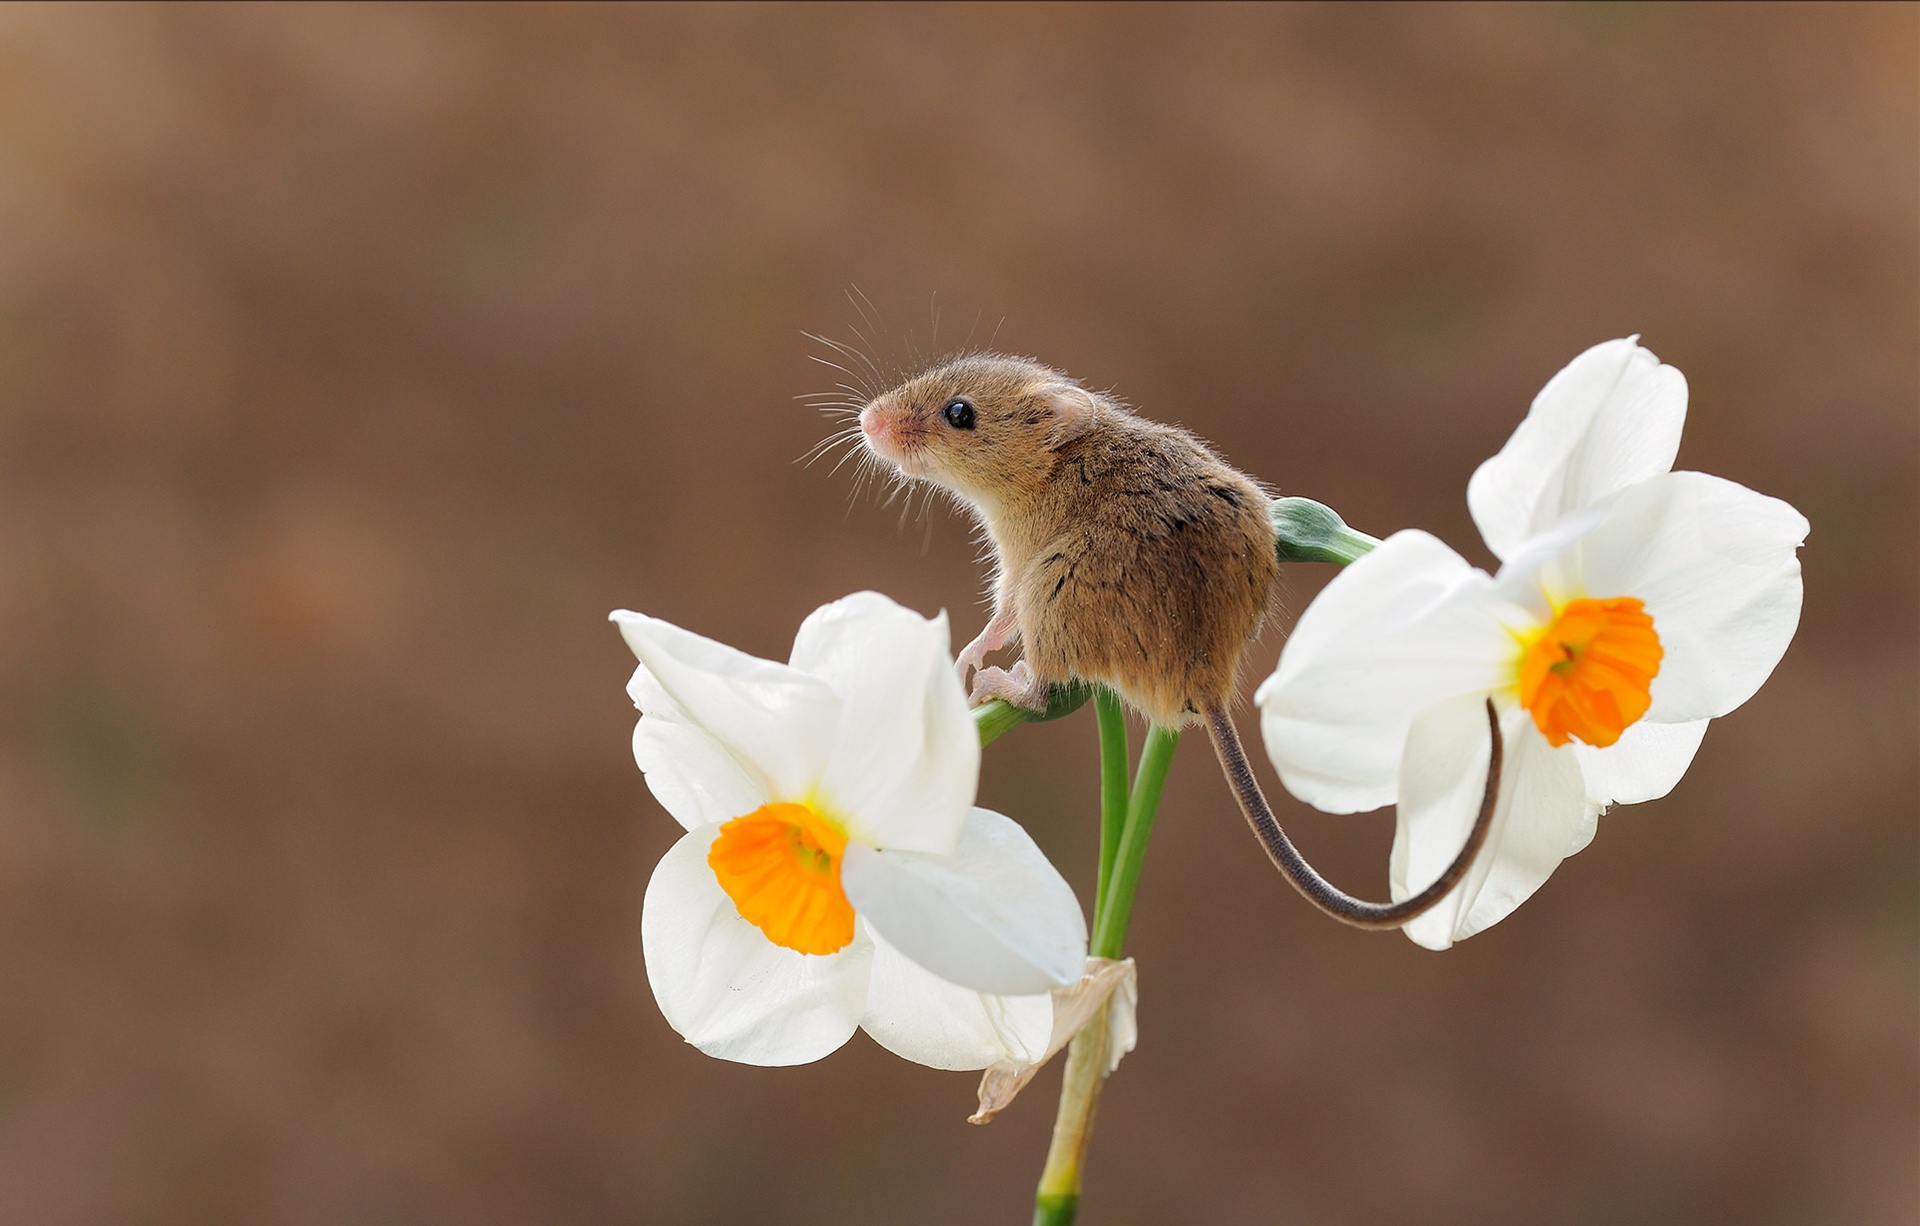 Мышь полевка в цветке